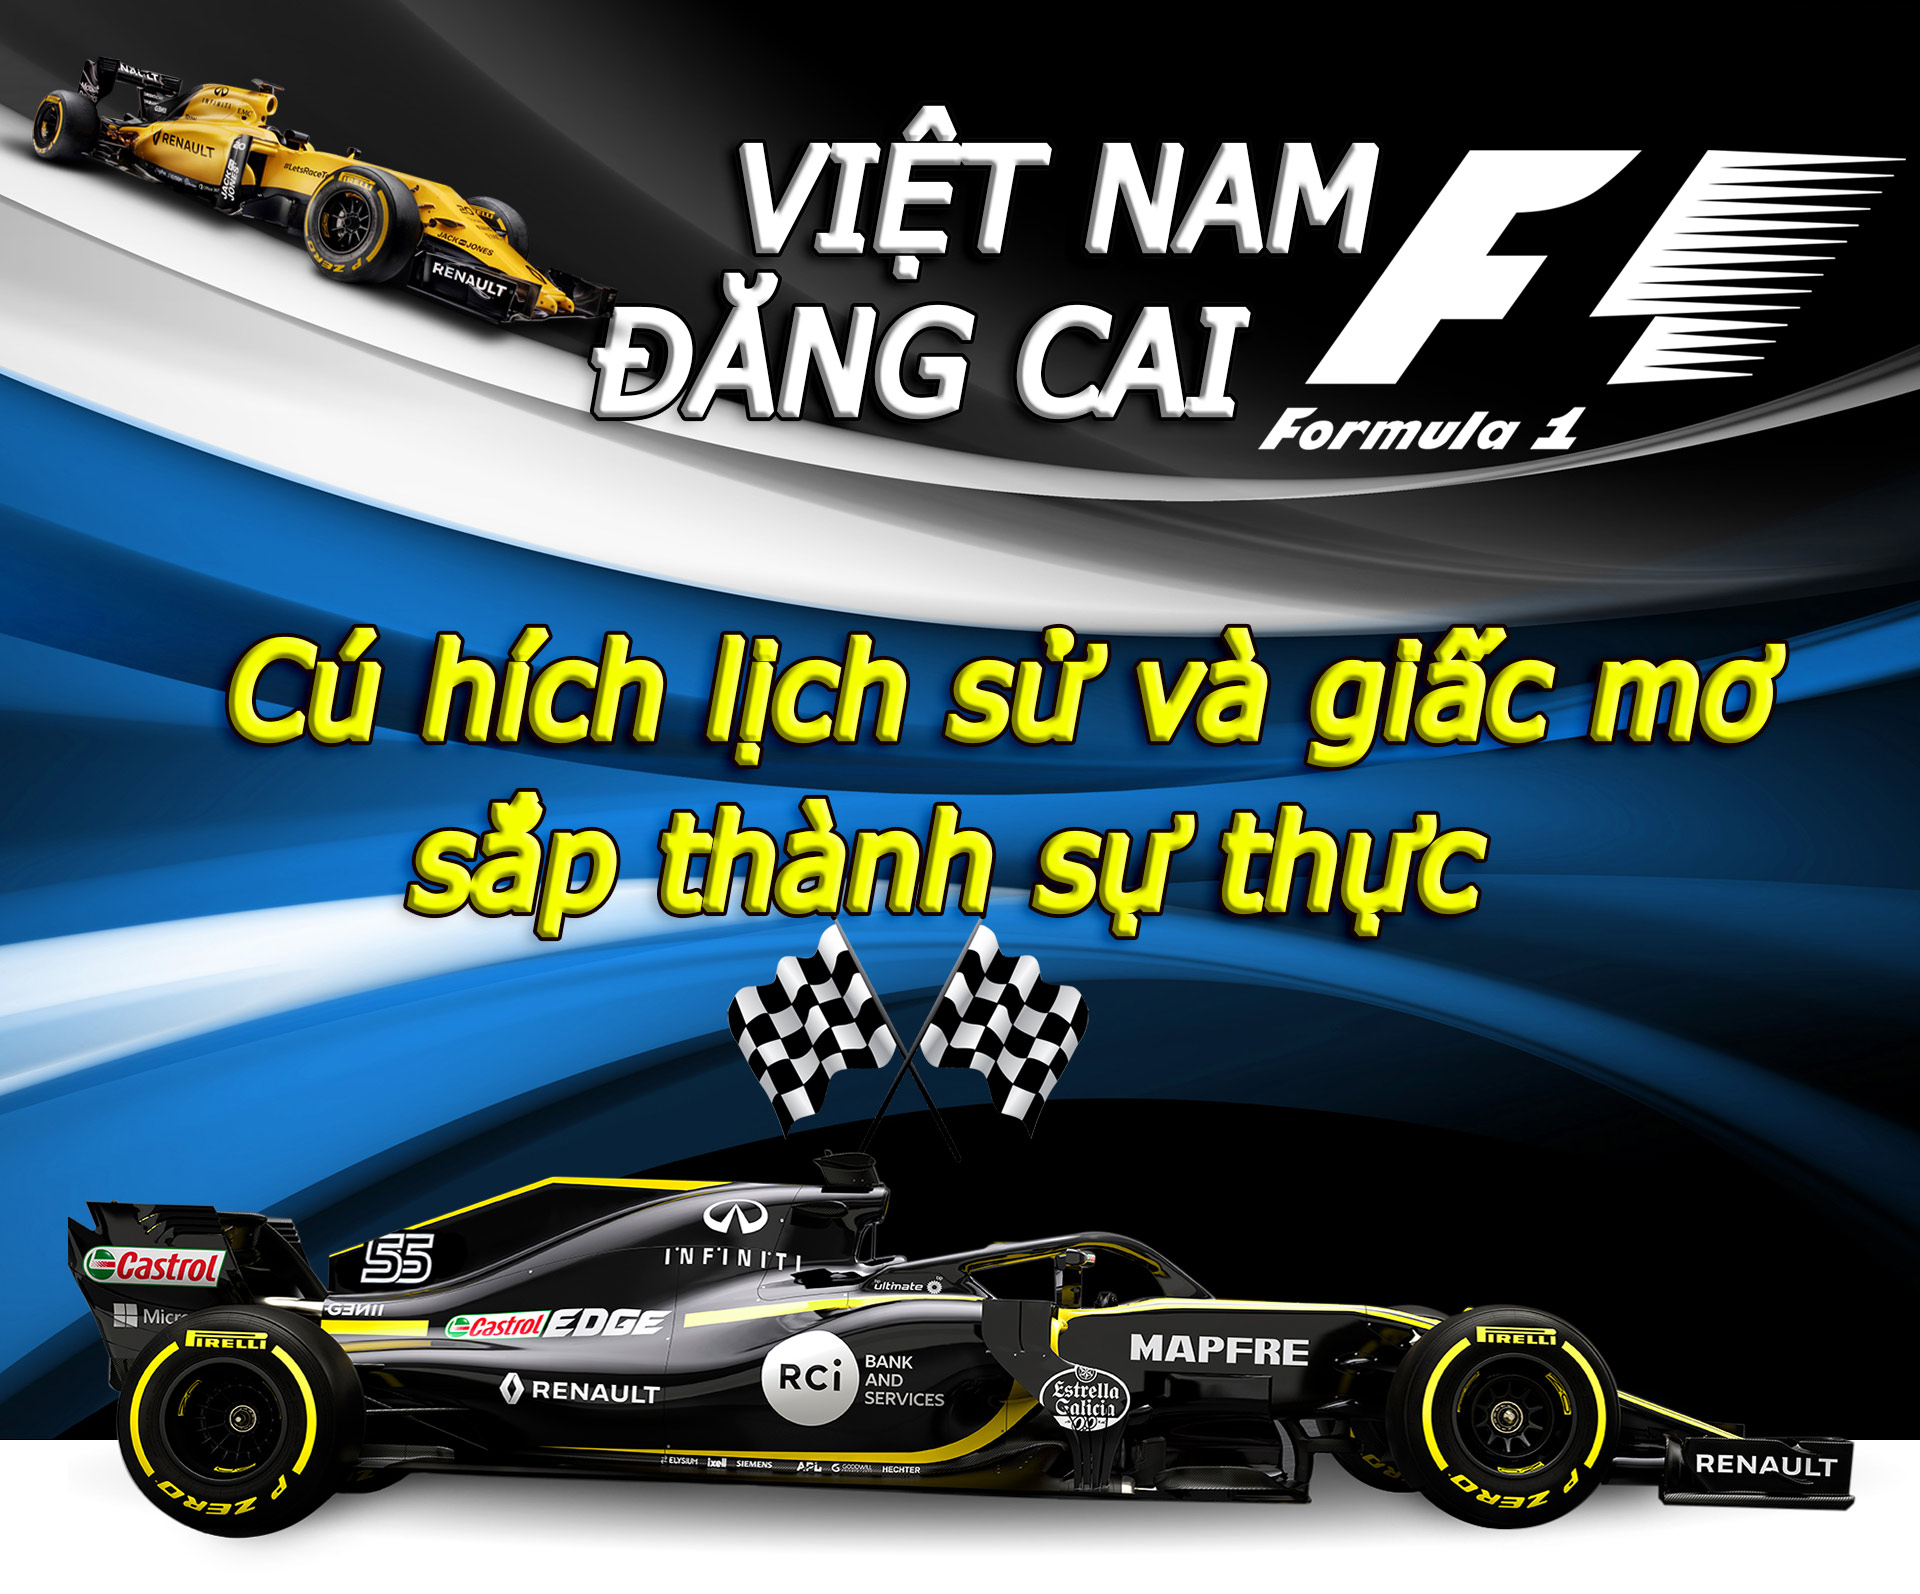 Việt Nam đăng cai F1: Cú hích lịch sử và giấc mơ sắp thành sự thực - 1